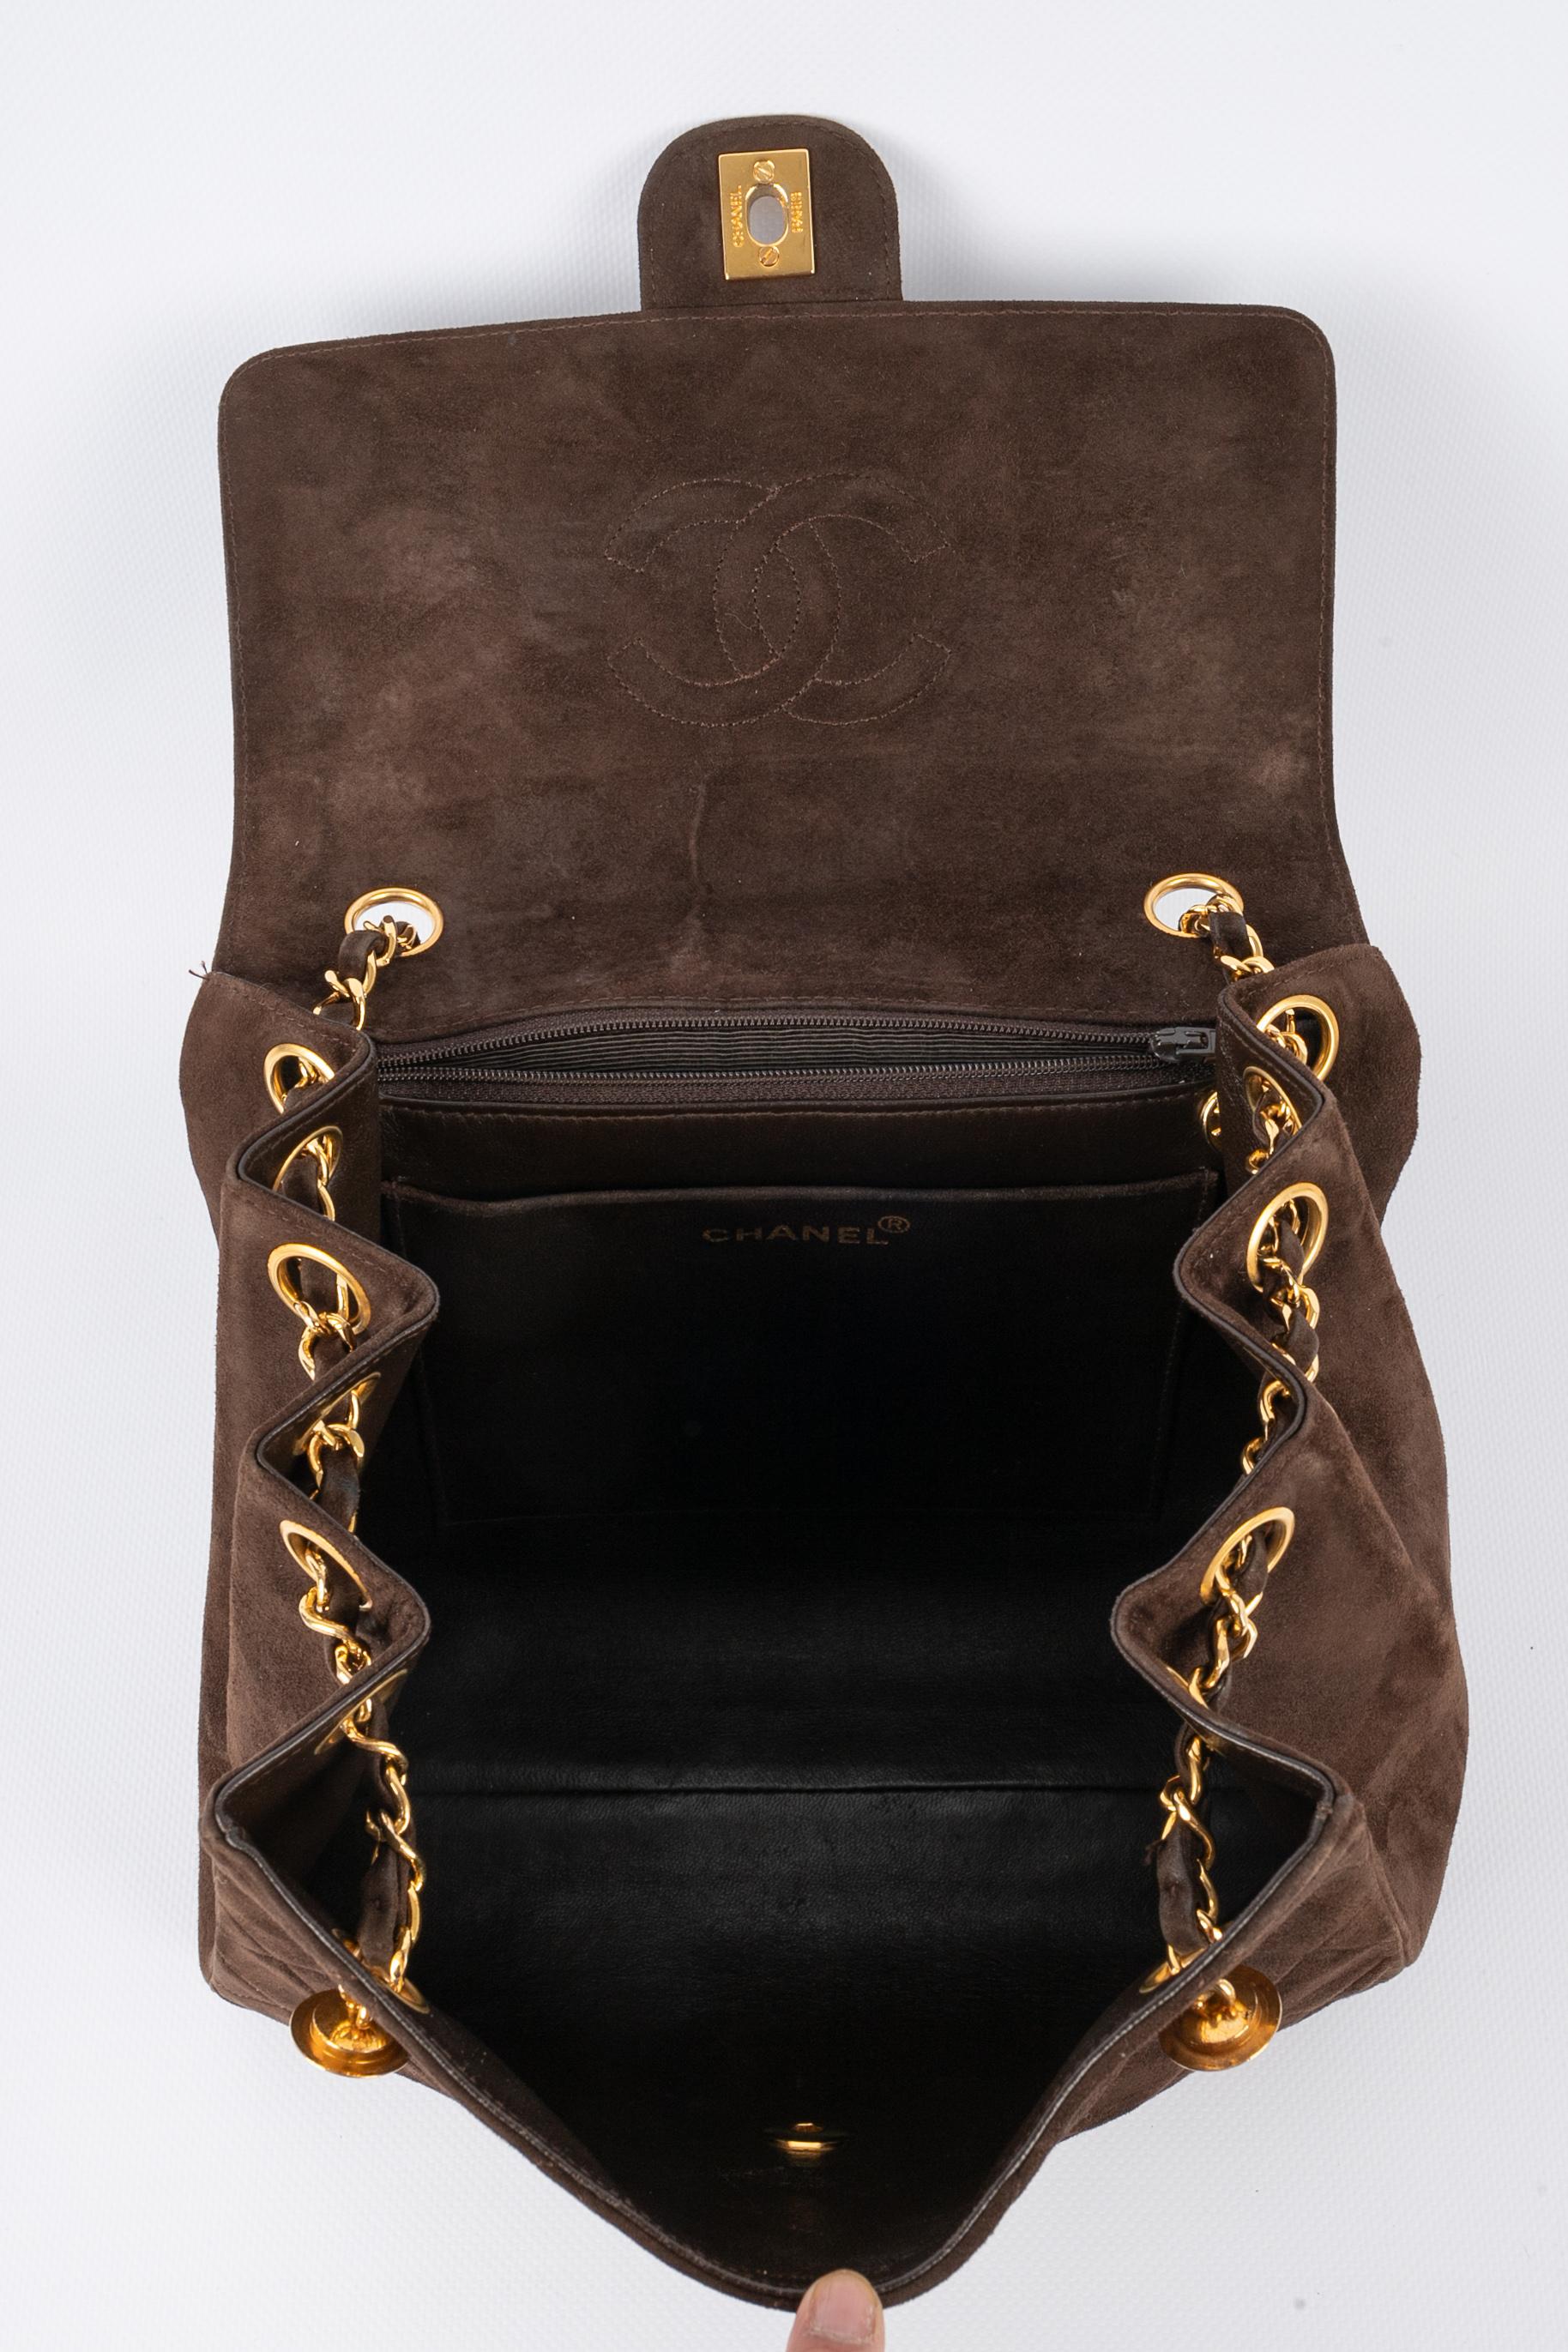 Chanel bag 1989/1991 5